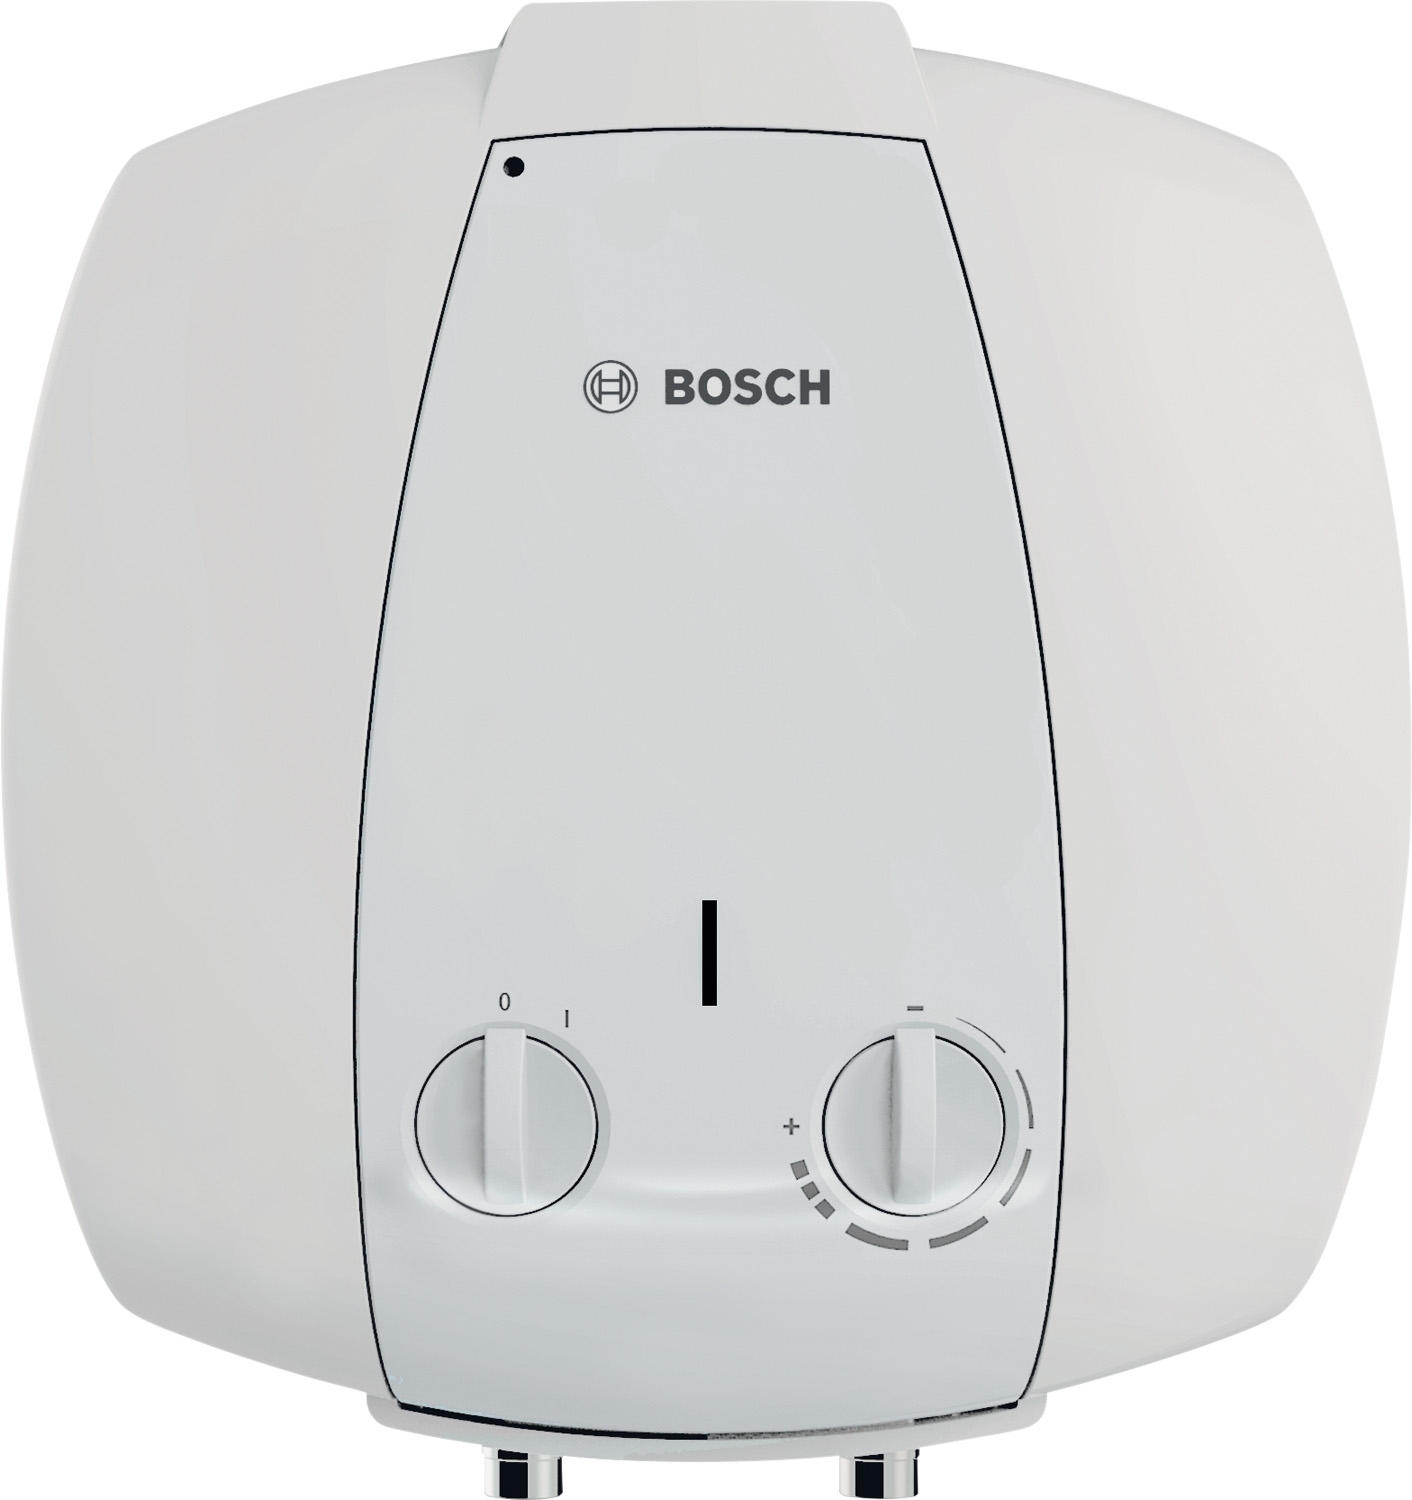 Бойлер на 10 литров Bosch TR 2000 T 10 B (7736504745) в Киеве